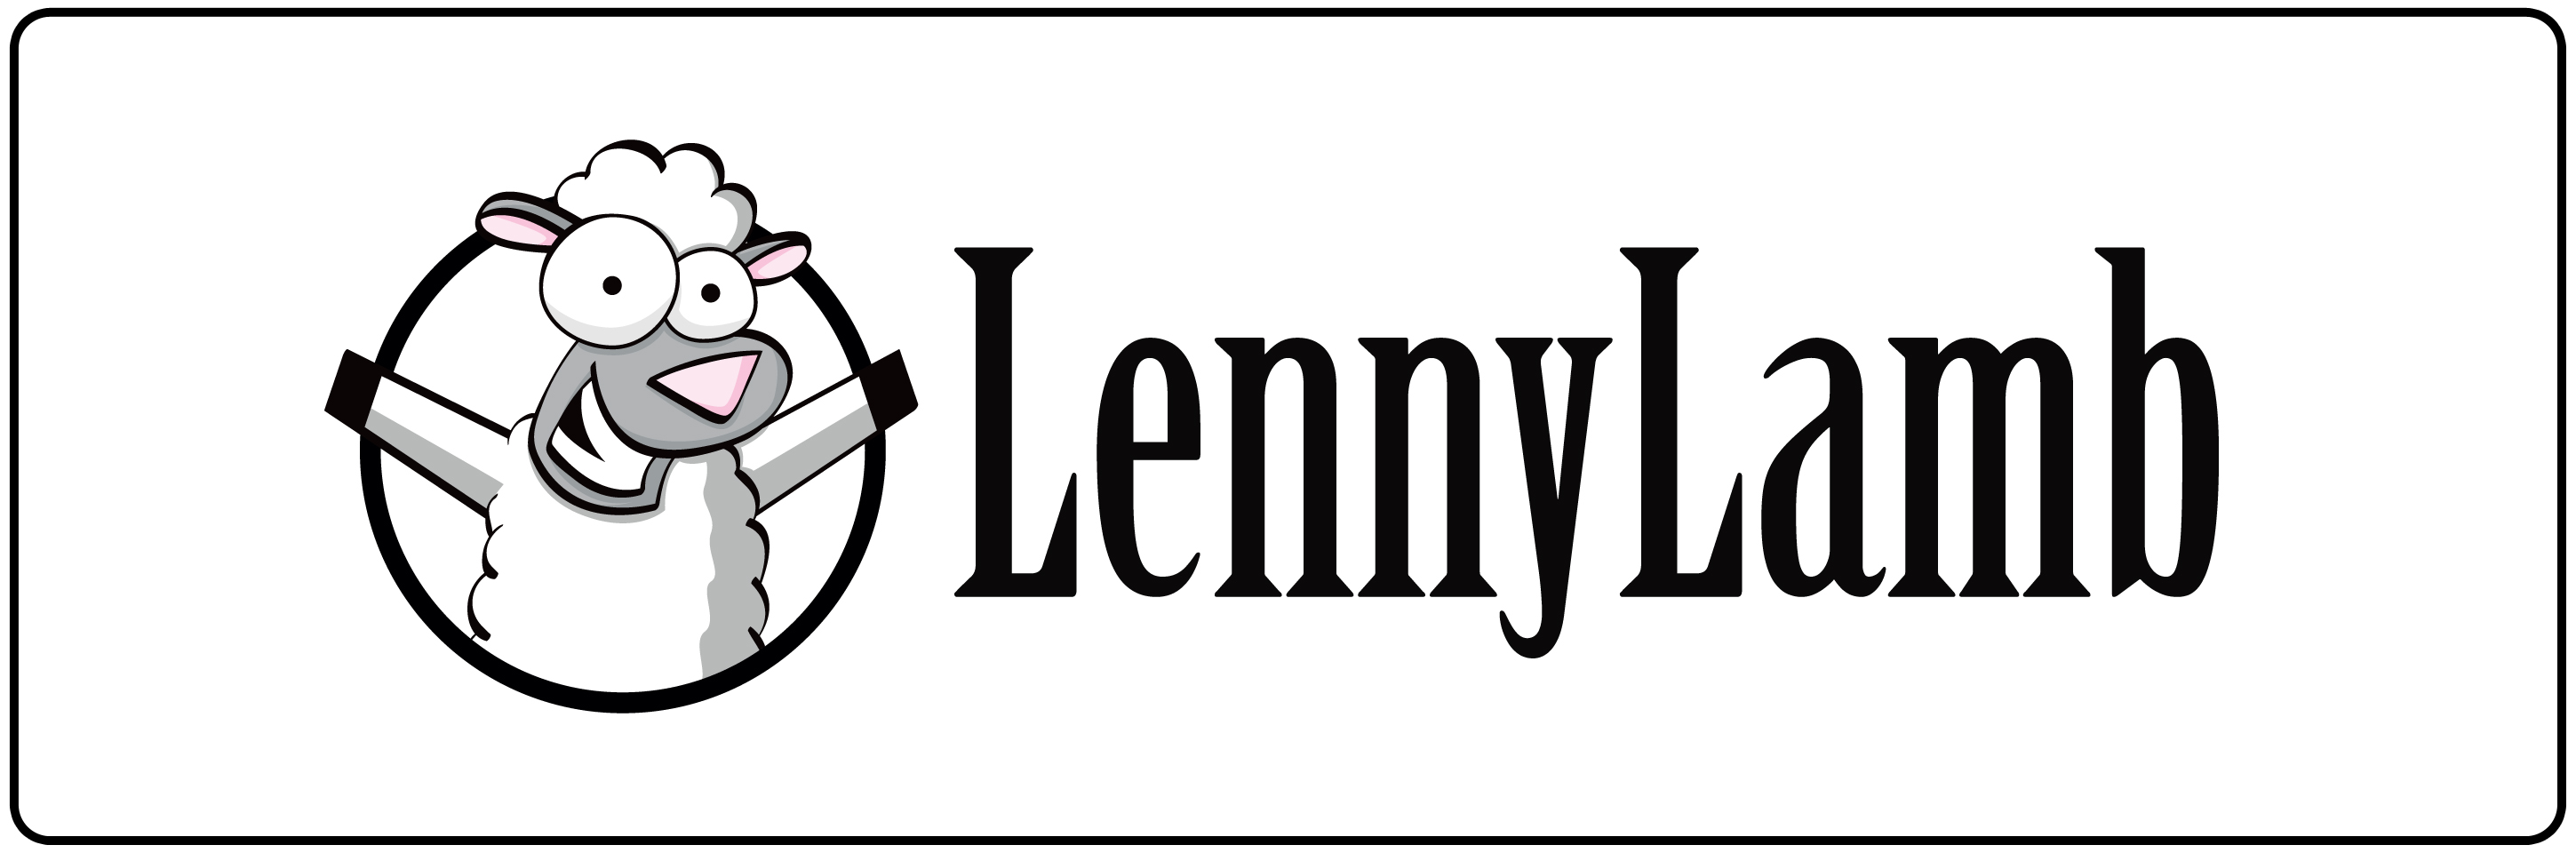 logo lenny lamb